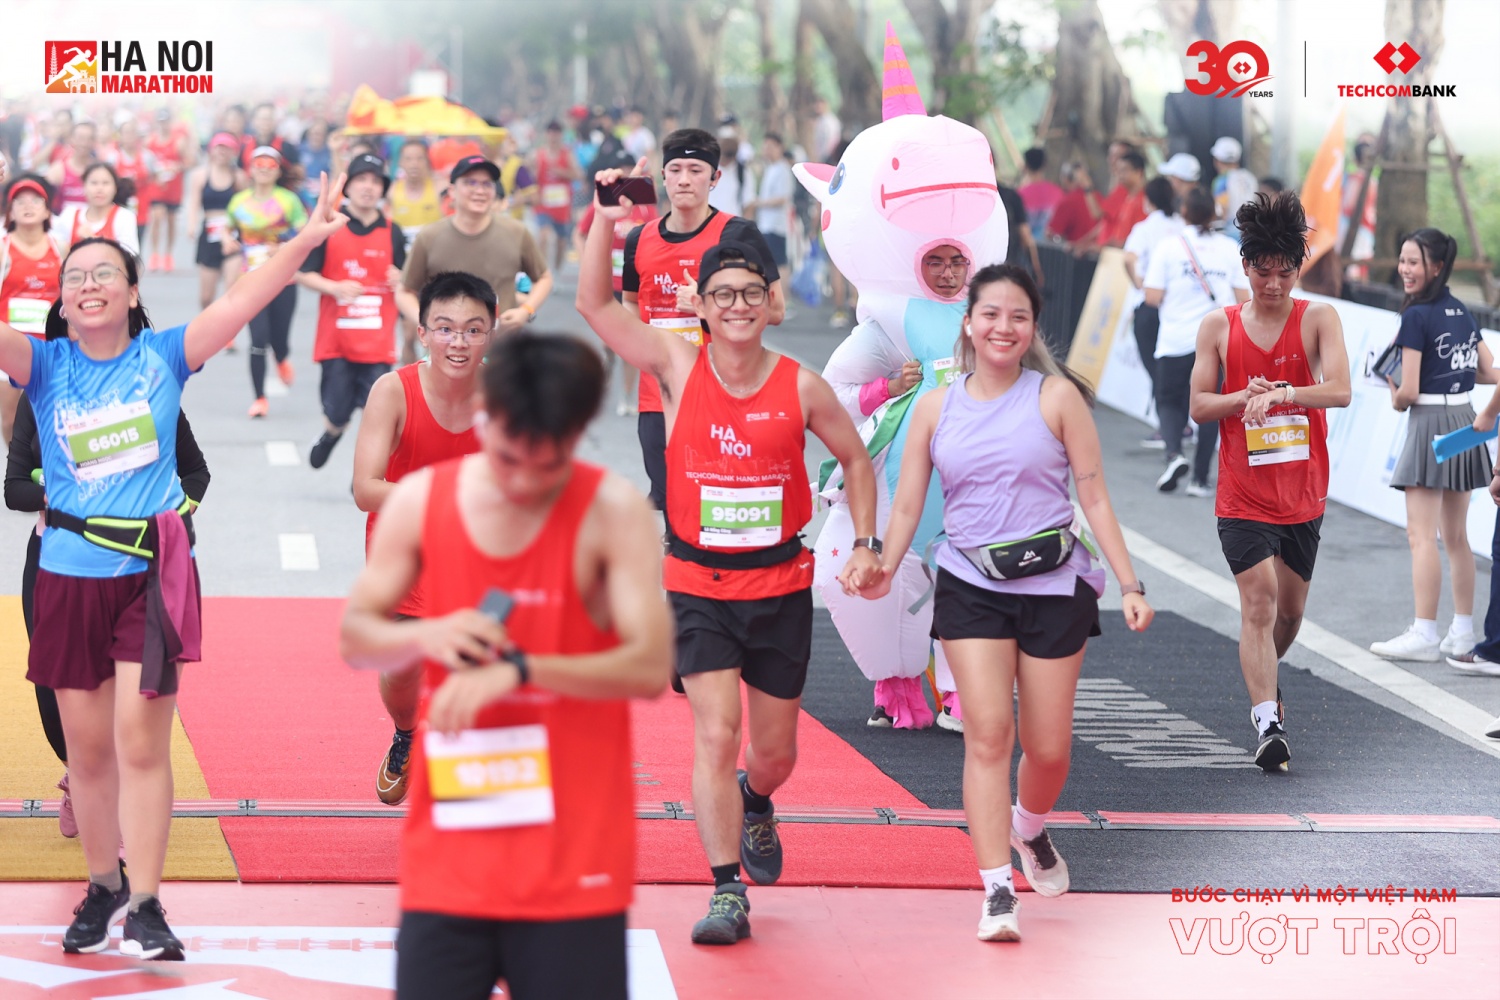 Khởi động mùa thứ 3, Giải Marathon Quốc tế Hà Nội Techcombank